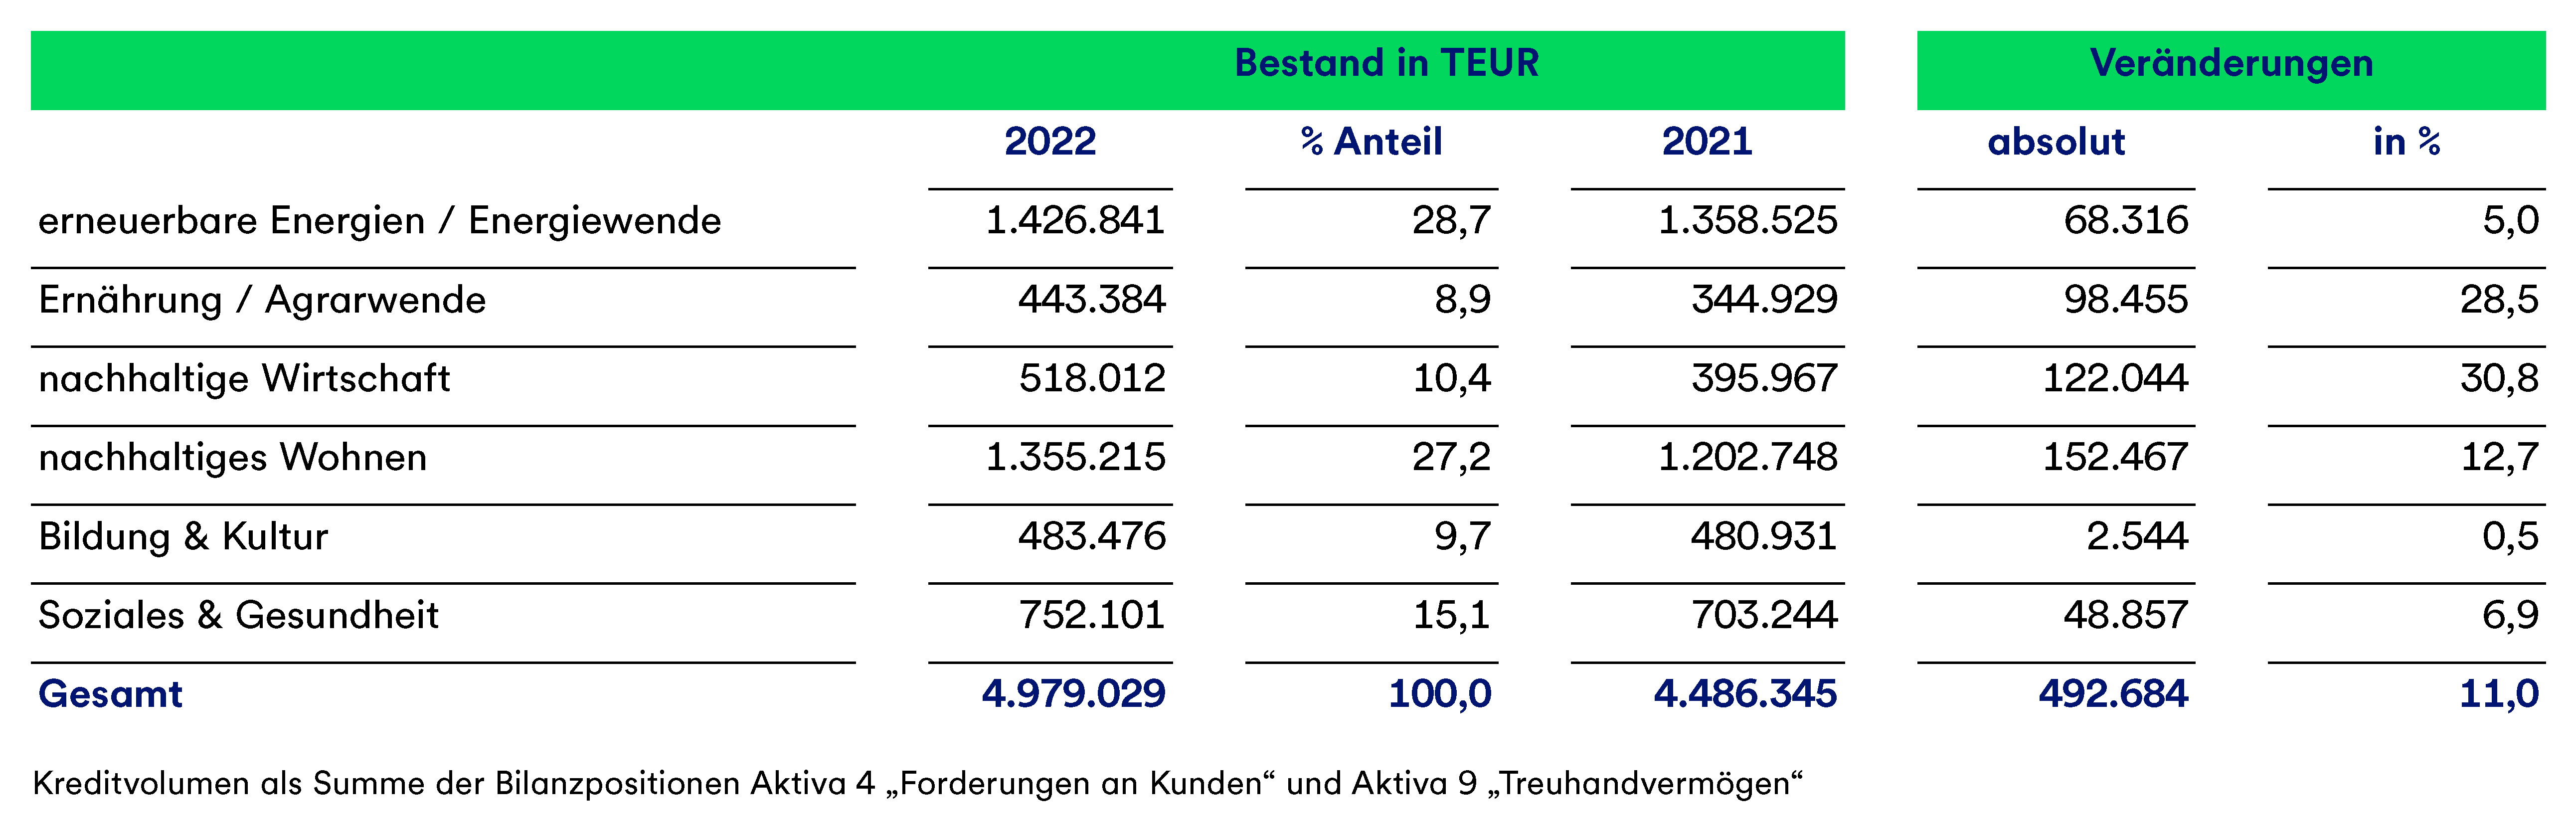 Eine Tabelle, die den Bestand je Branche in Tausend Euro in den Jahren 2021 und 2021 darstellt, sowie die Veränderungen absolut und in Prozent.